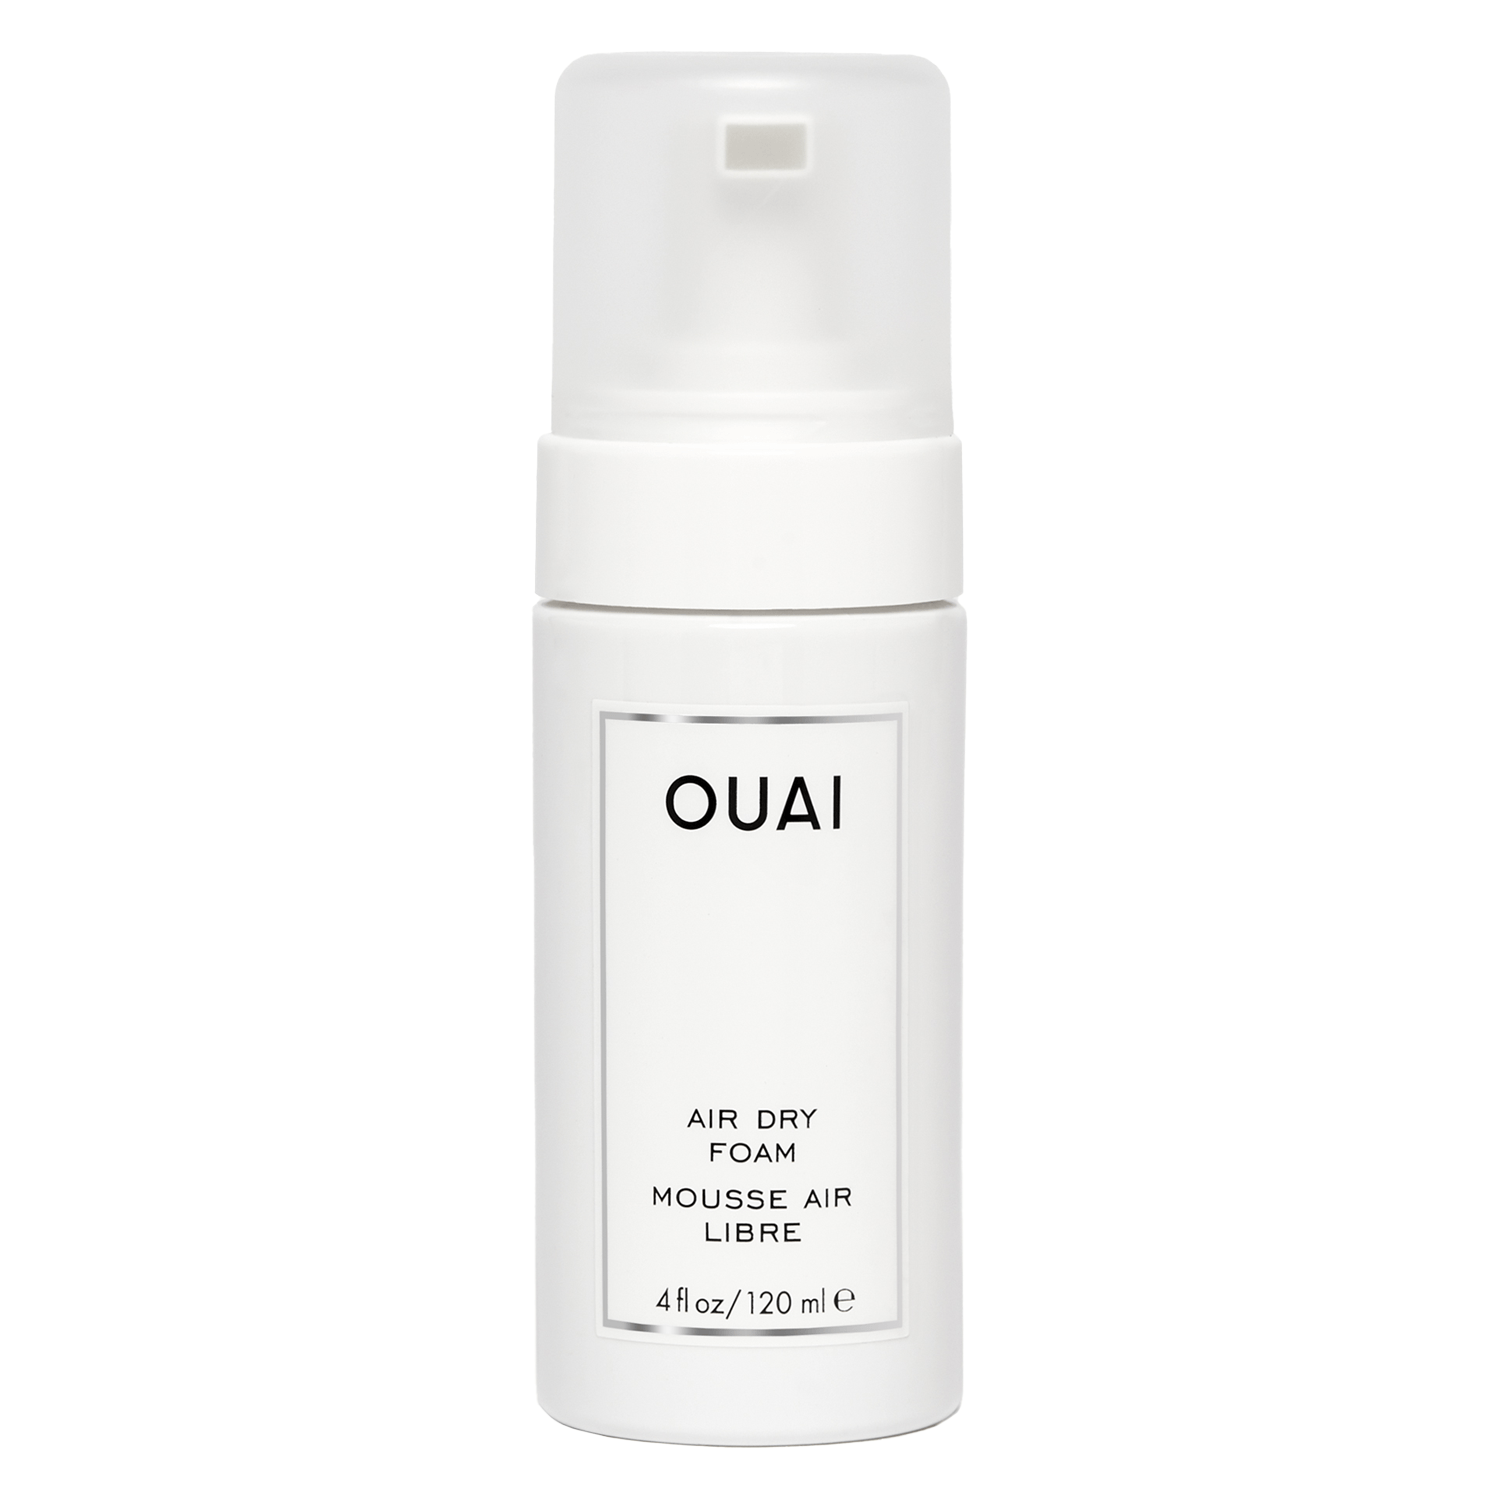 Produktbild von OUAI - Air Dry Foam